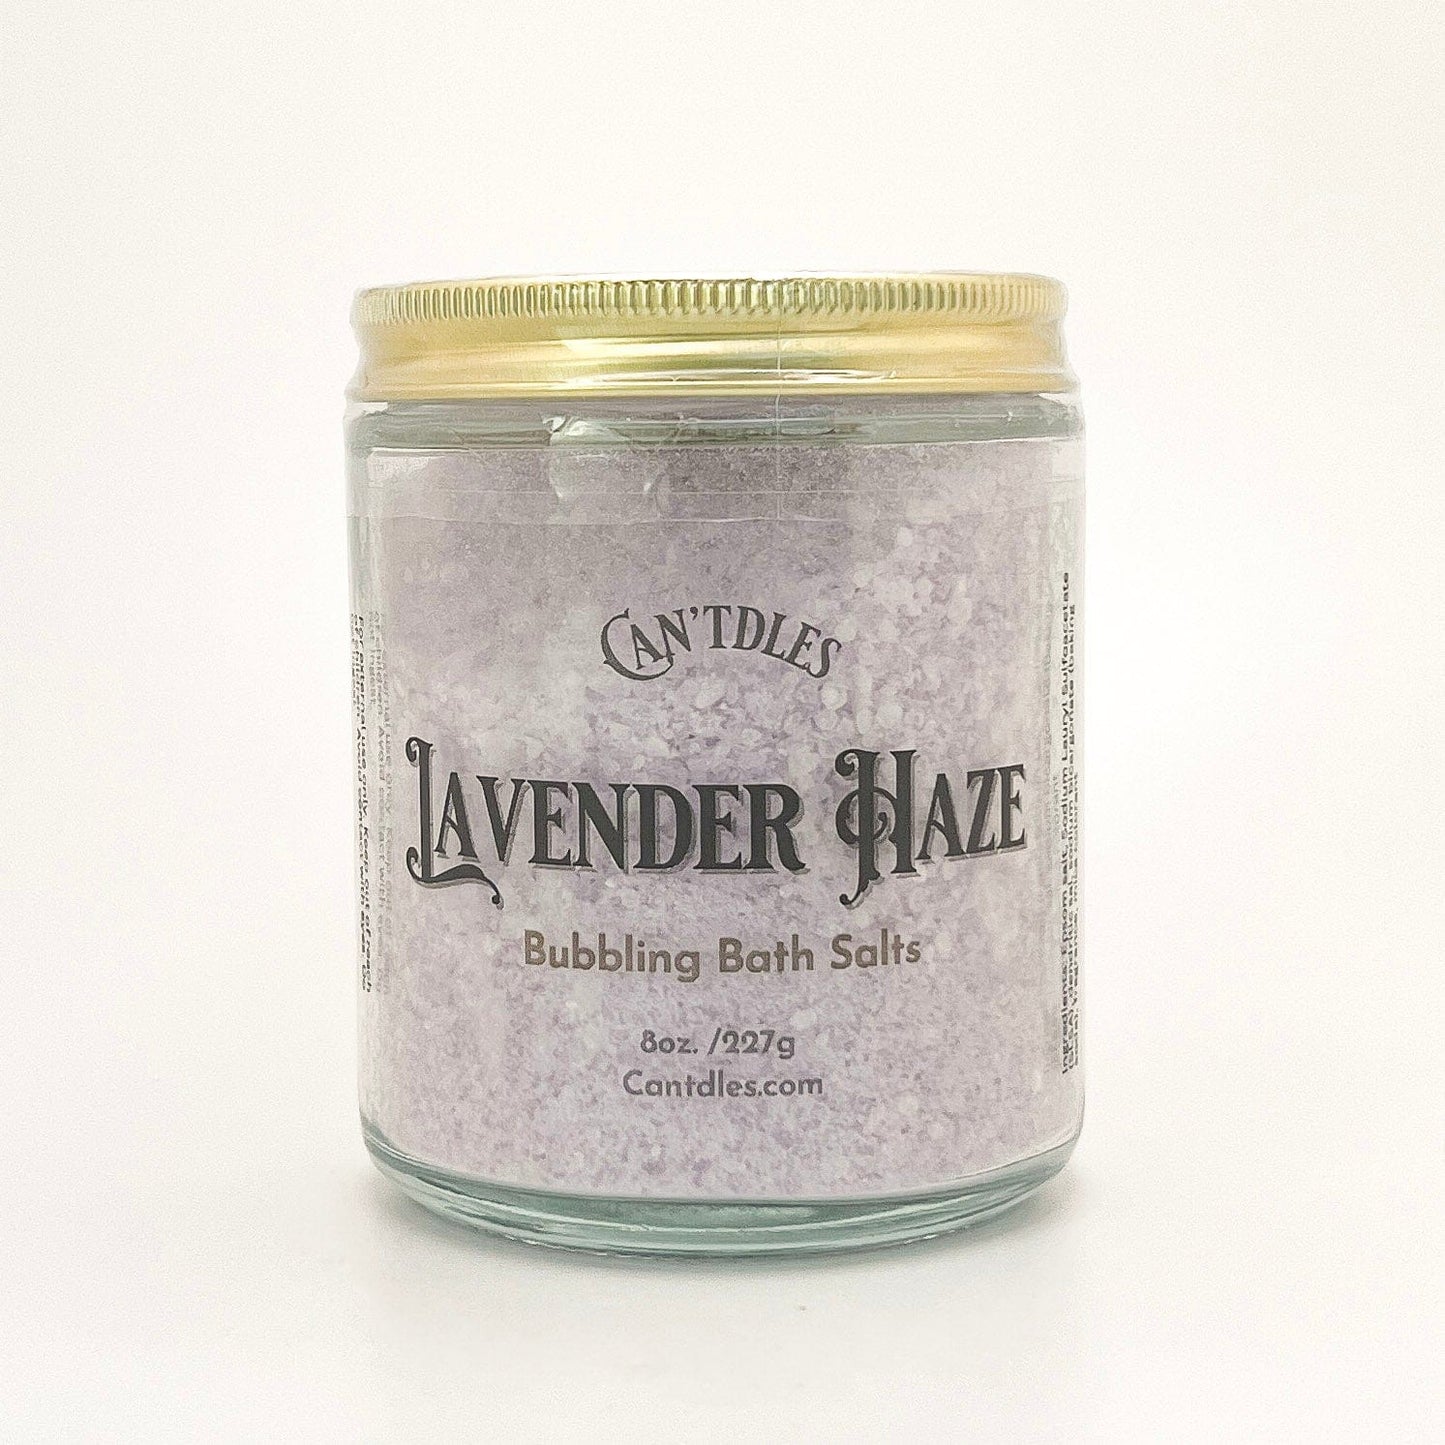 Can'tdles Bubbling Bath Salts Lavender Haze: Bubbling Bath Salts